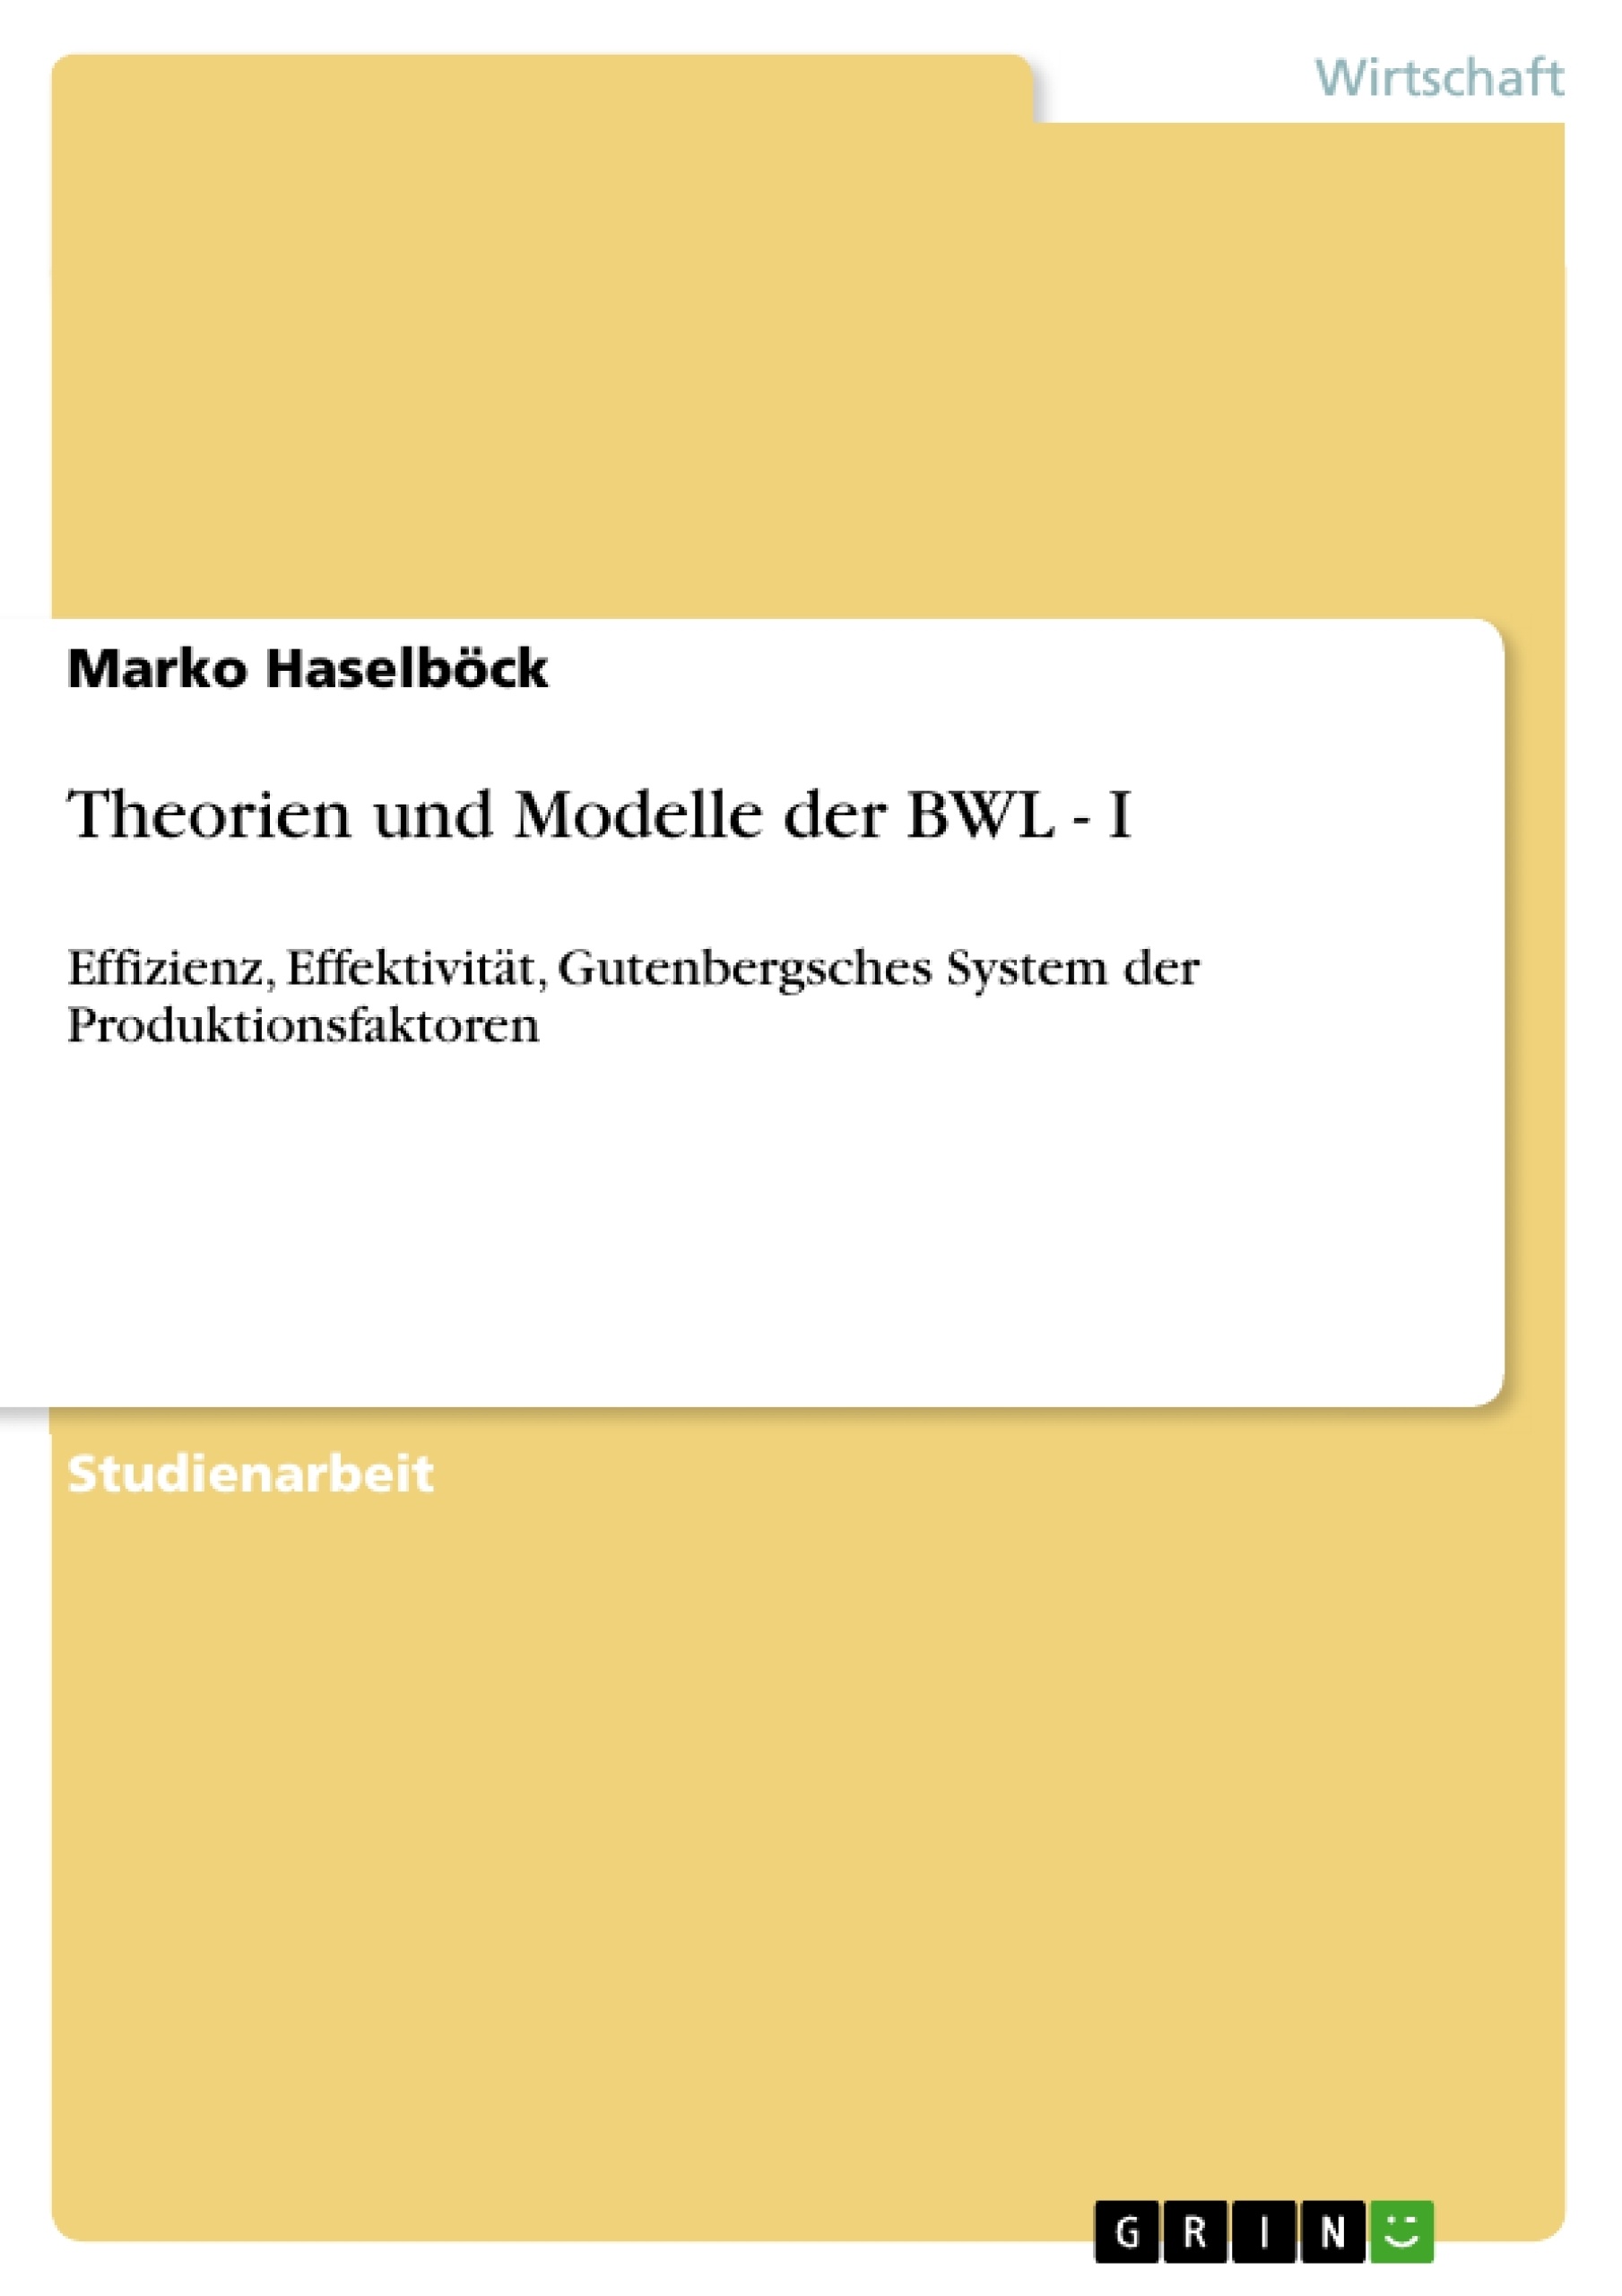 Titre: Theorien und Modelle der BWL - I